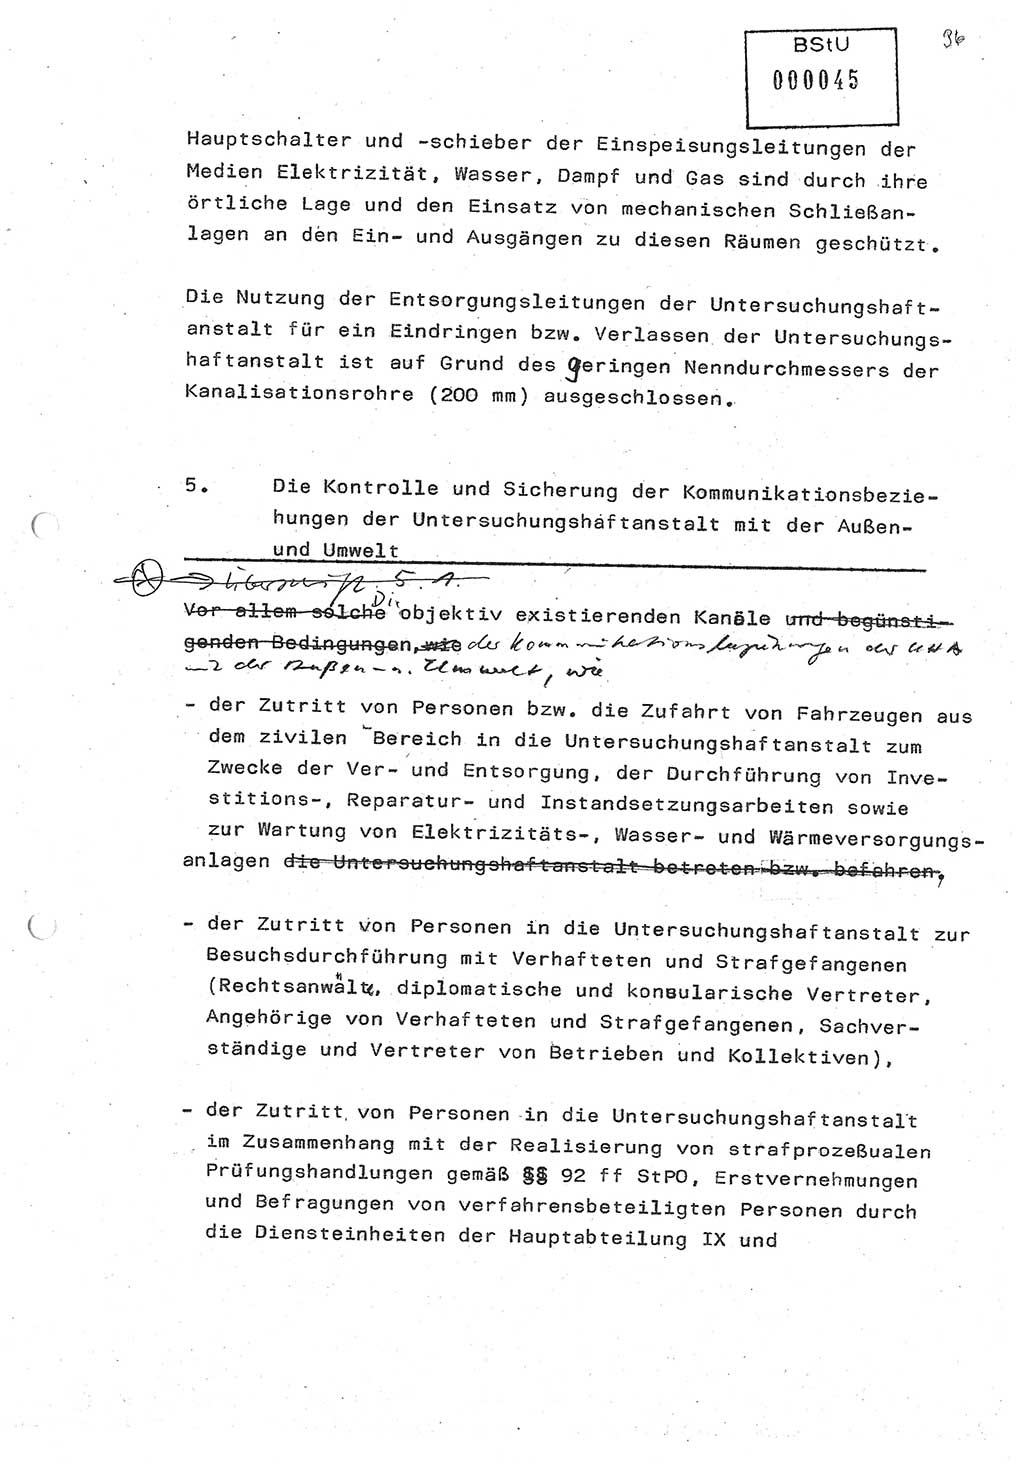 Diplomarbeit (Entwurf) Oberleutnant Peter Parke (Abt. ⅩⅣ), Ministerium für Staatssicherheit (MfS) [Deutsche Demokratische Republik (DDR)], Juristische Hochschule (JHS), Geheime Verschlußsache (GVS) o001-98/86, Potsdam 1986, Seite 45 (Dipl.-Arb. MfS DDR JHS GVS o001-98/86 1986, S. 45)